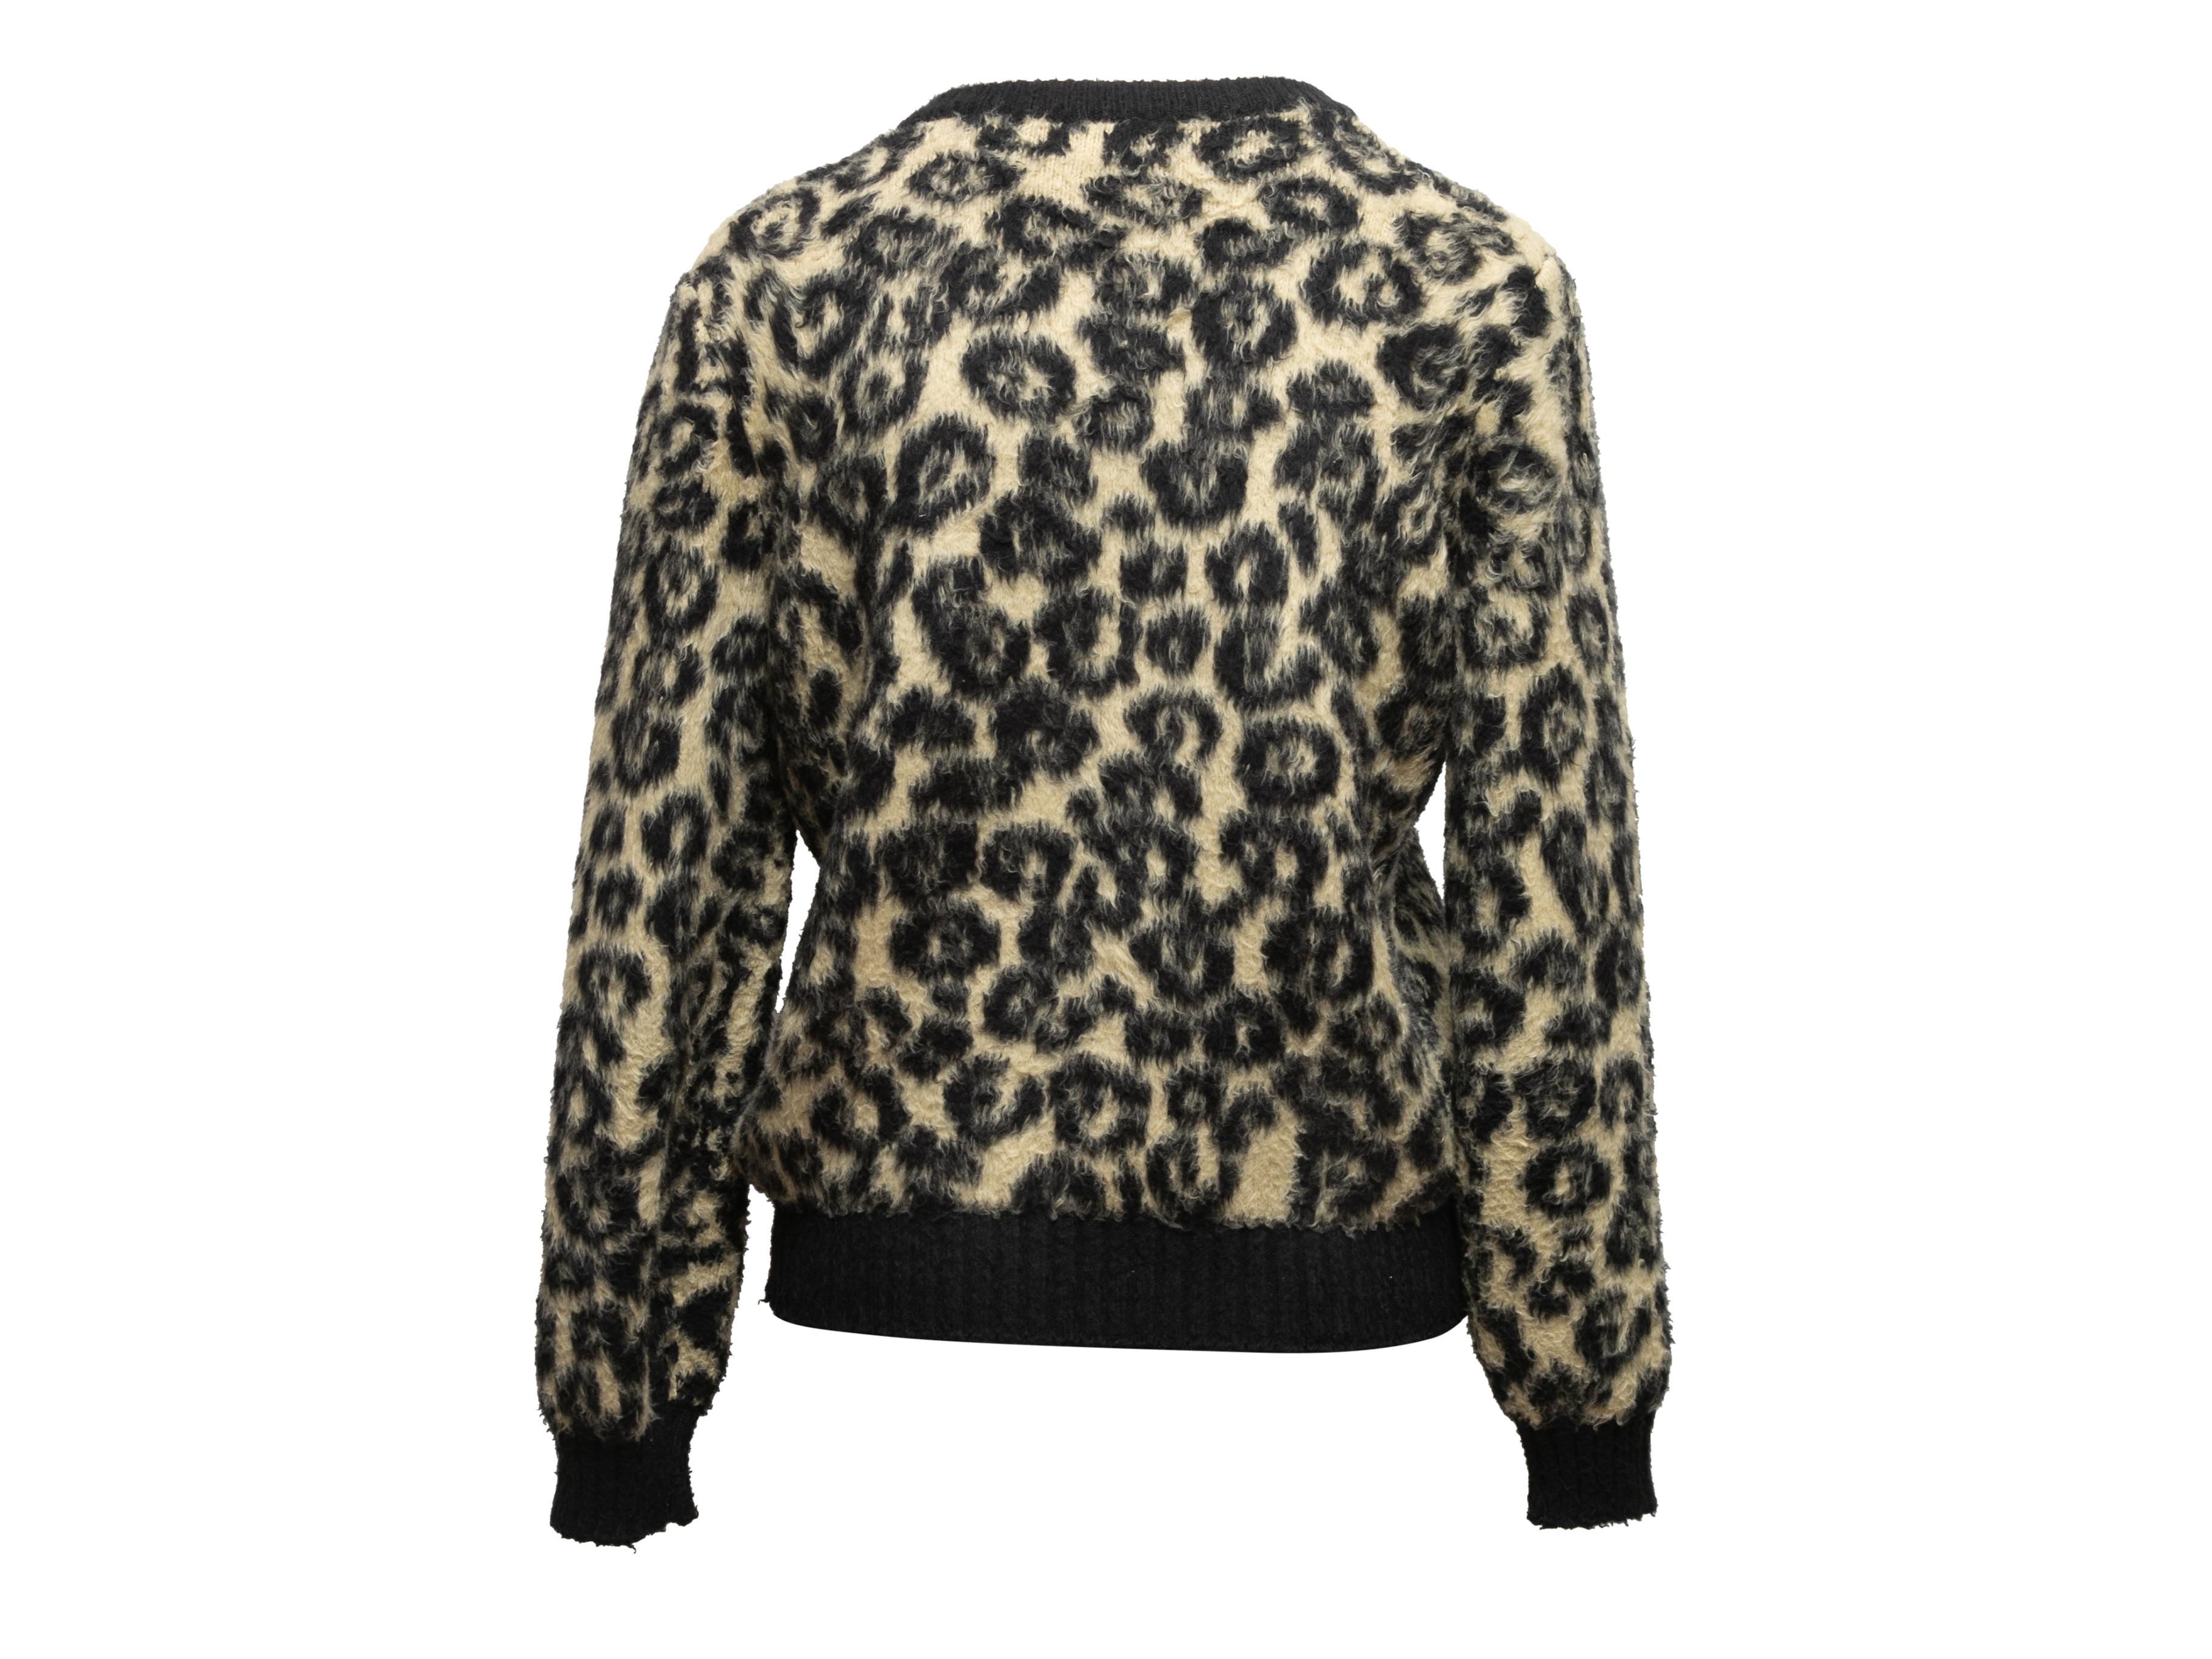 Schwarz-beiger Pullover mit Leopardenmuster von Celine. Rundhalsausschnitt. 40